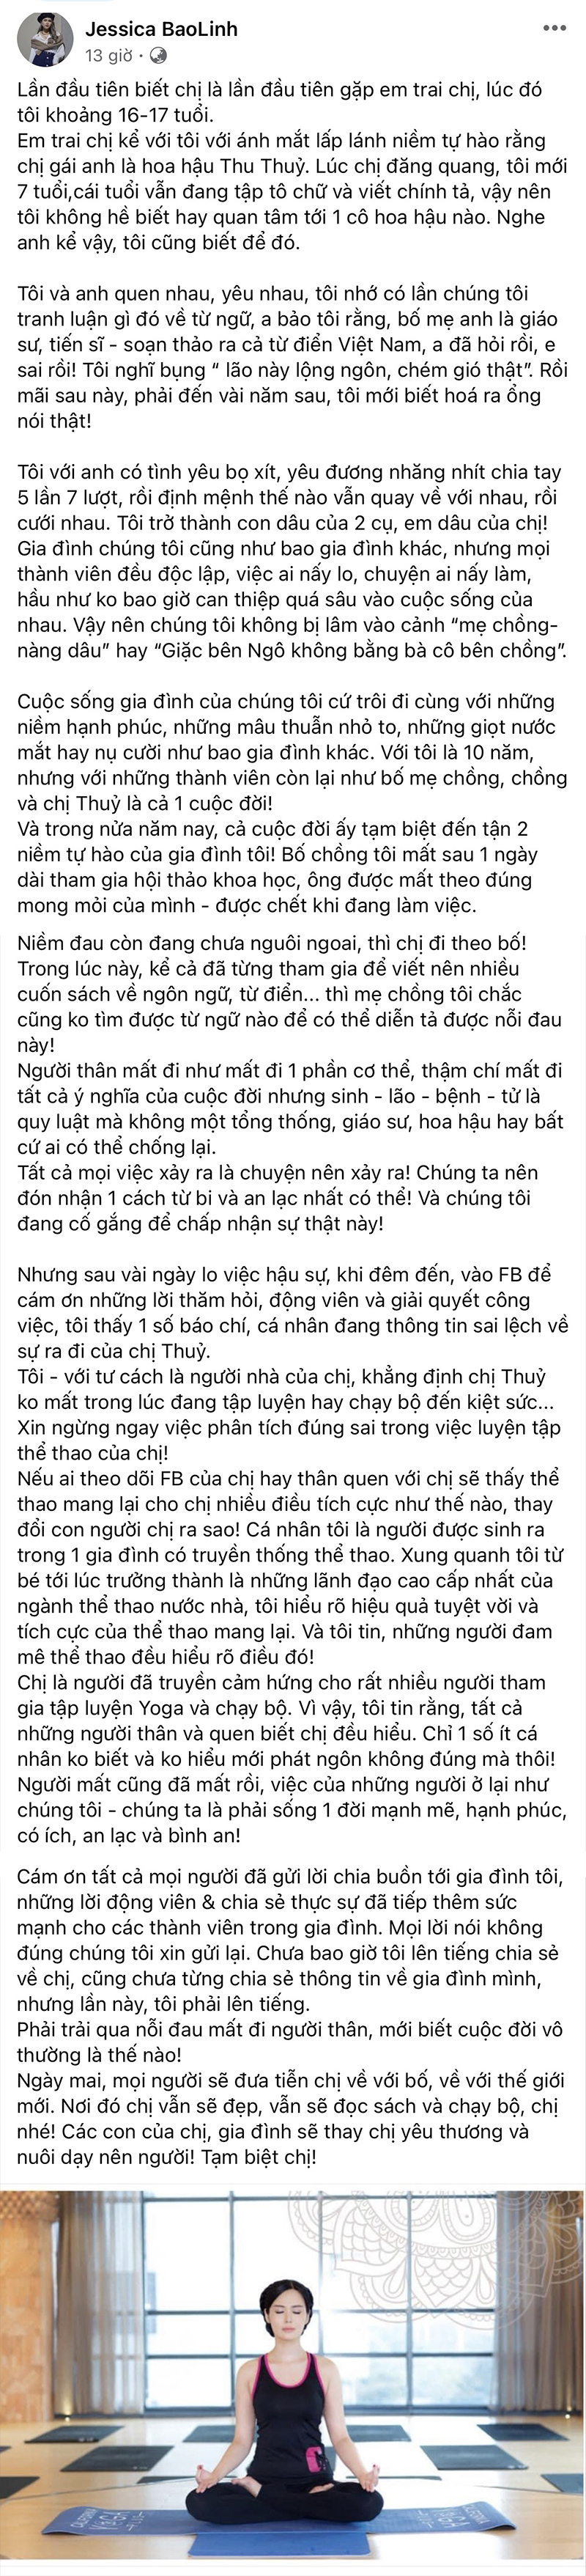 Em dâu Hoa hậu Thu Thủy: "Xin ngừng việc phân tích đúng sai trong việc luyện tập thể thao của chị" - Ảnh 2